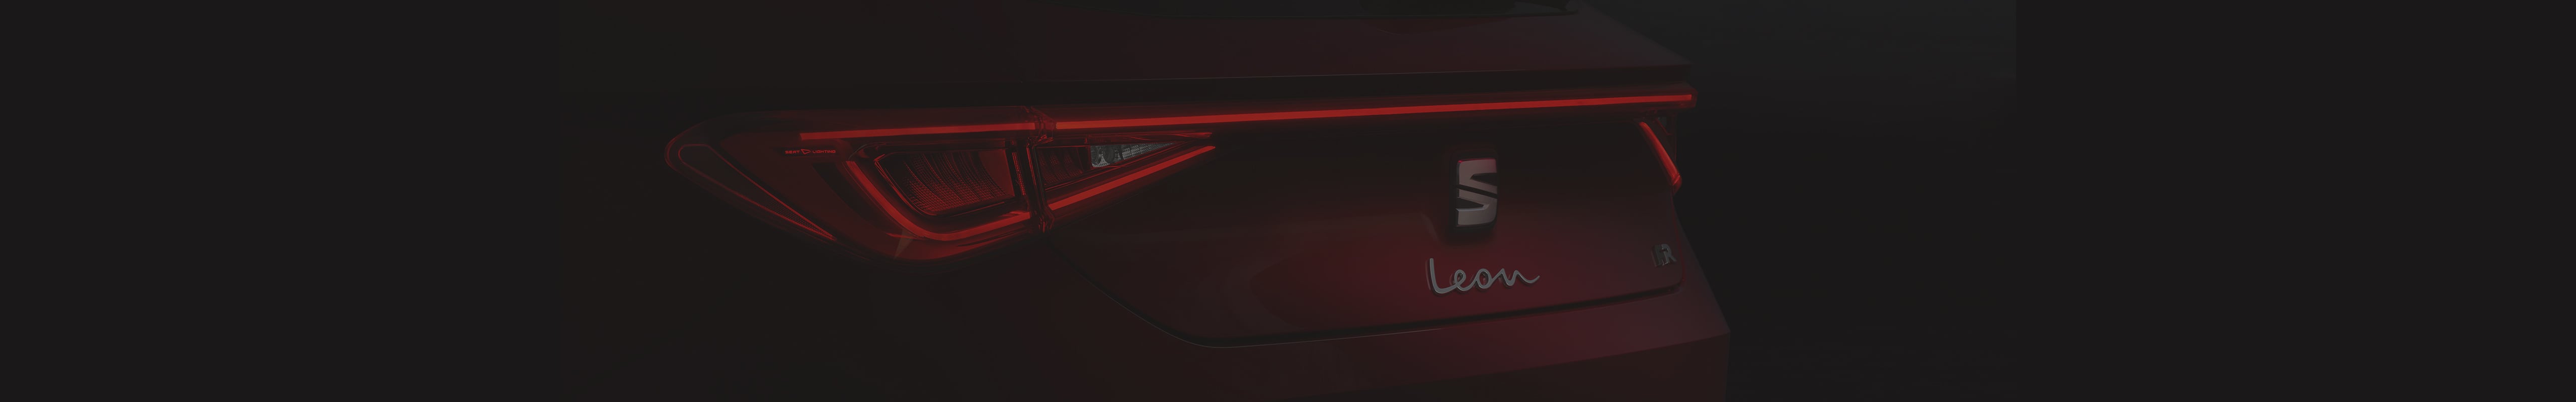 La nueva generación del SEAT León establece nuevos estándares en el segmento